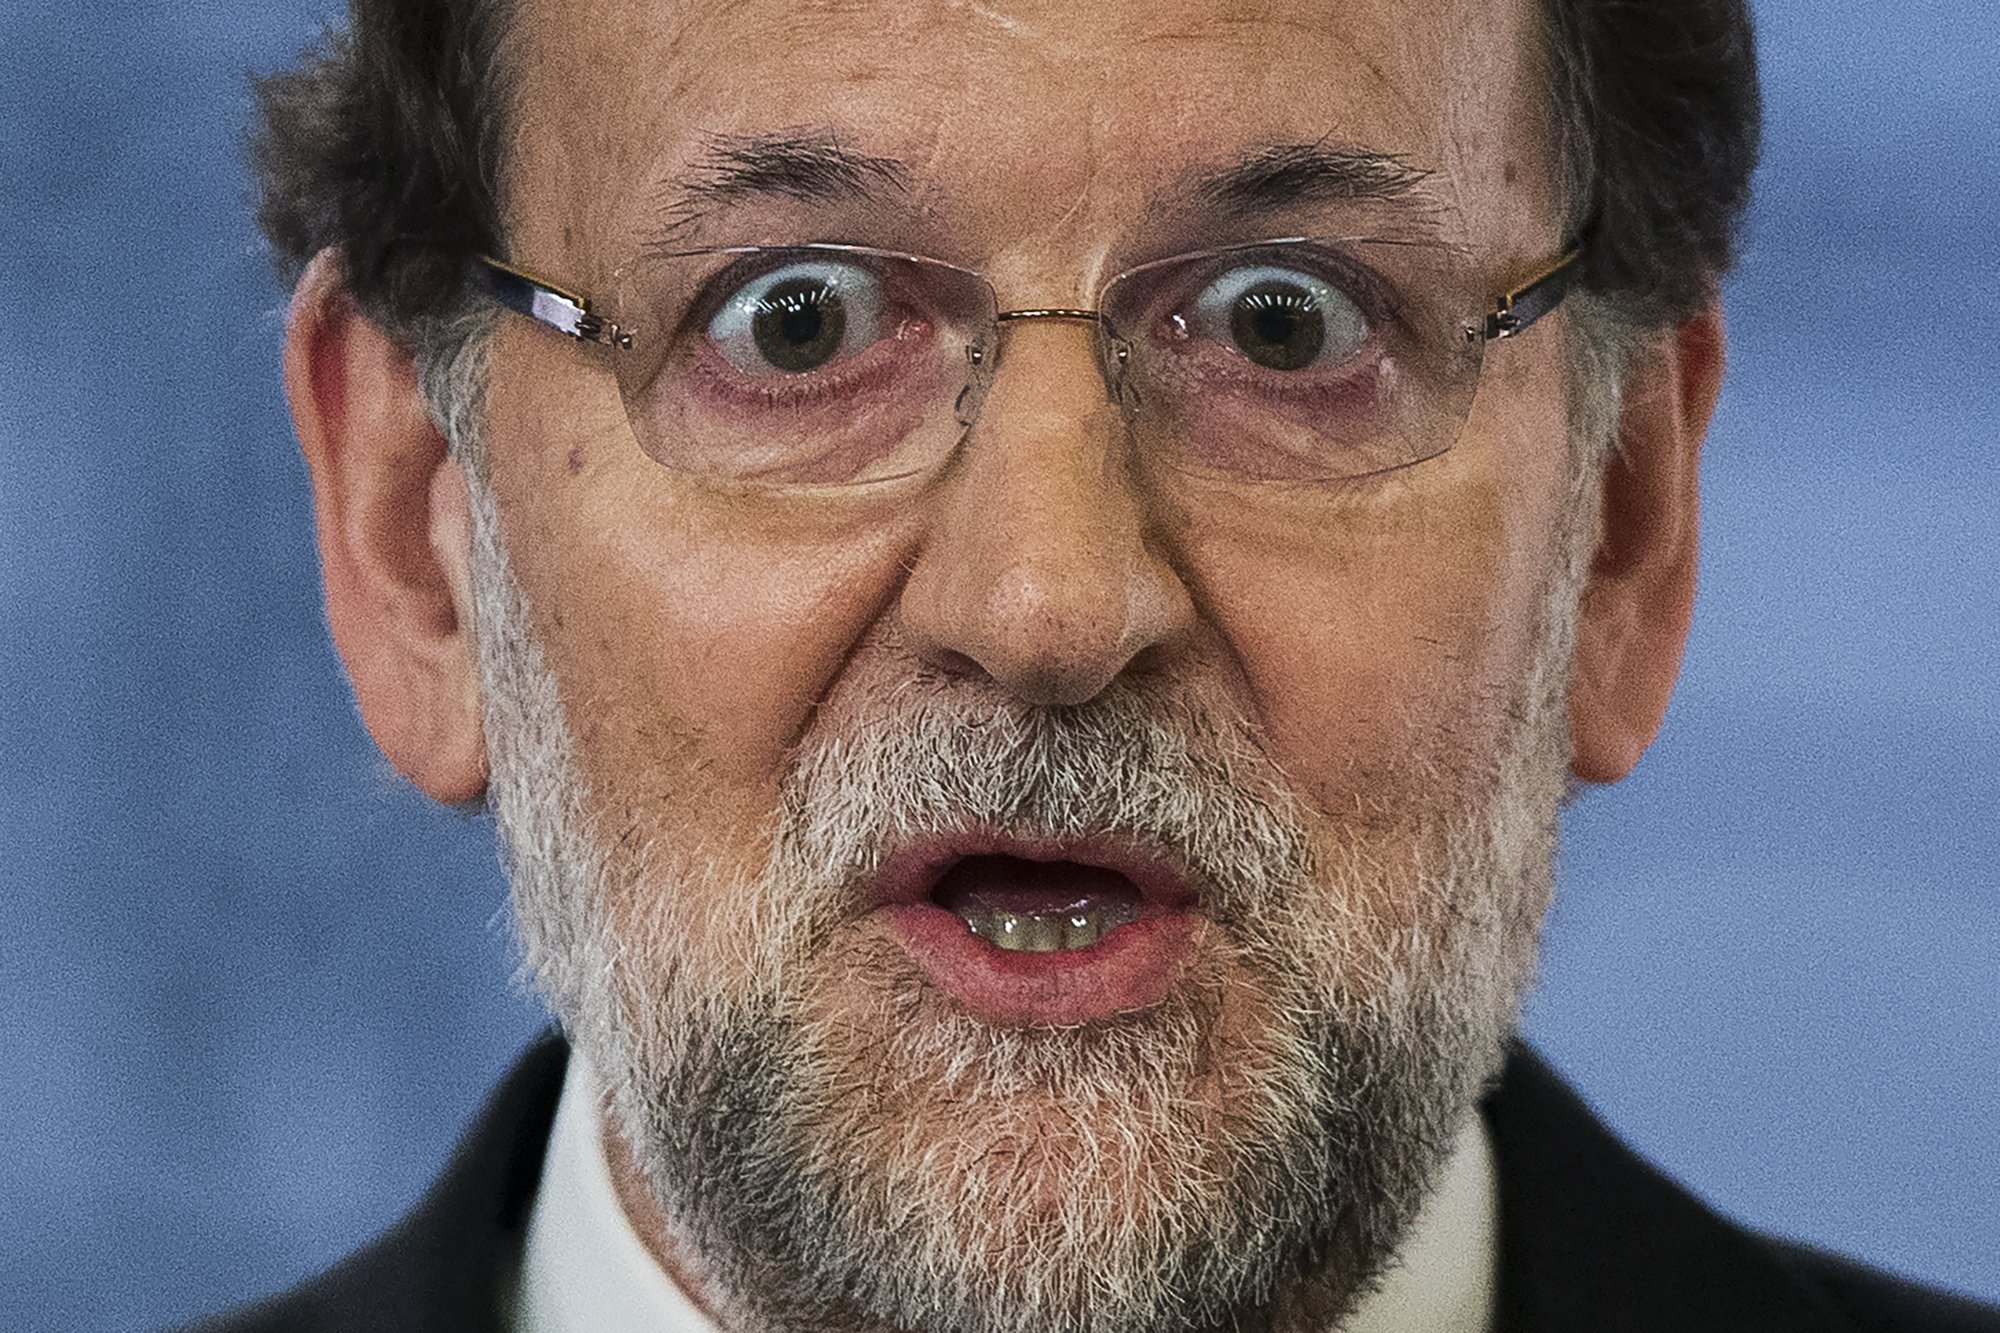 Rajoy gafapasta: nuevo e increíble look de Mariano para parecer menos casposo